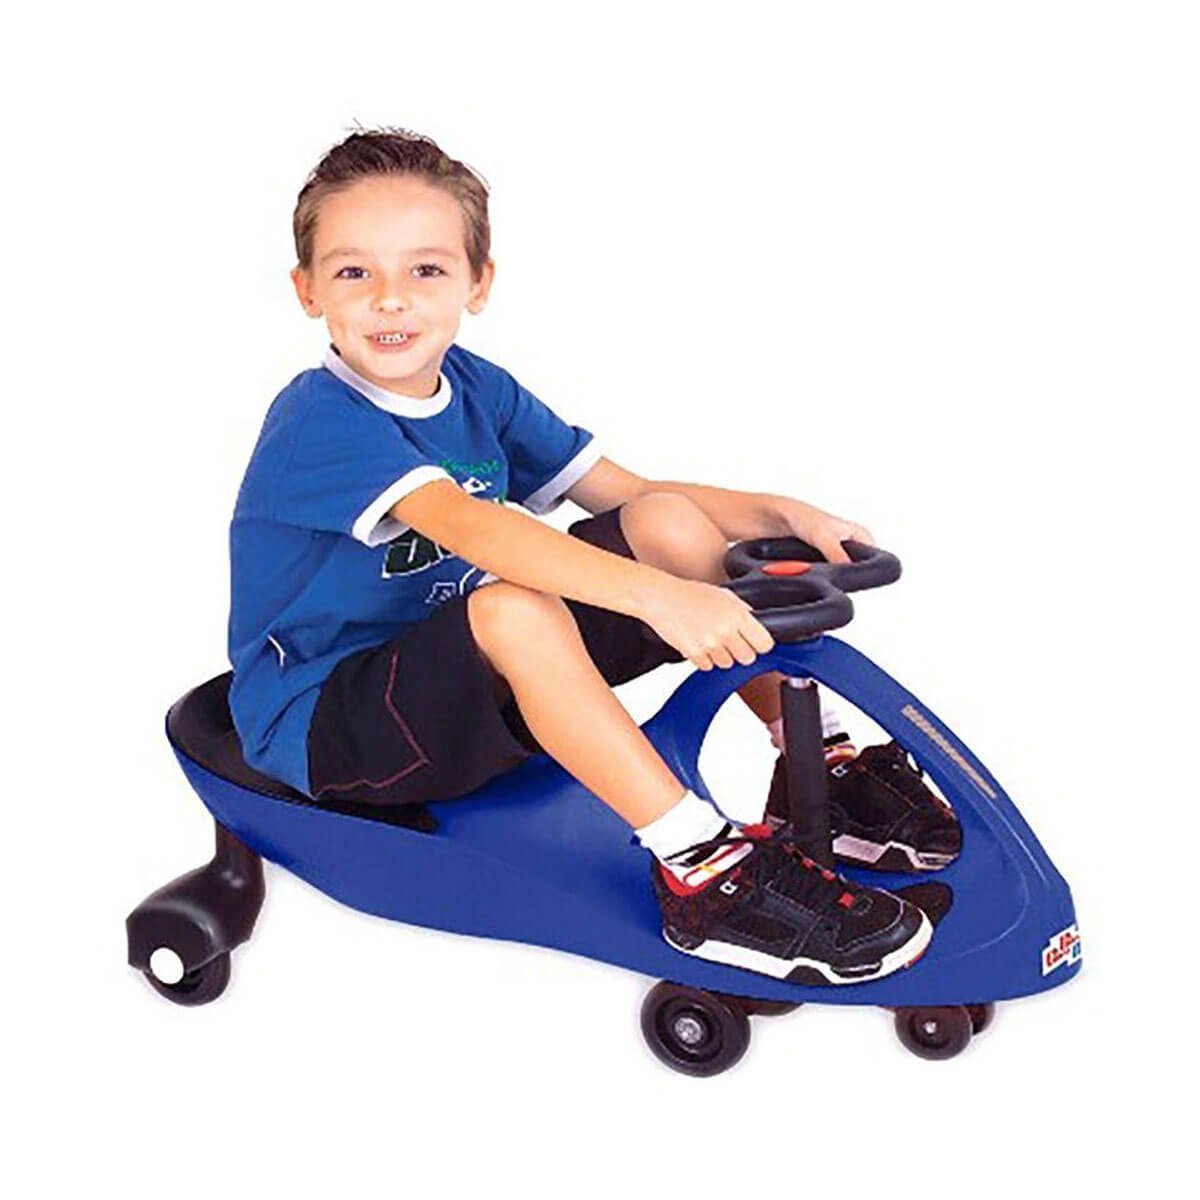 Carrinho Gira Gira Car Rolimã Manual Fênix Brinquedo Criança Suporta até 100kg Azul - 2